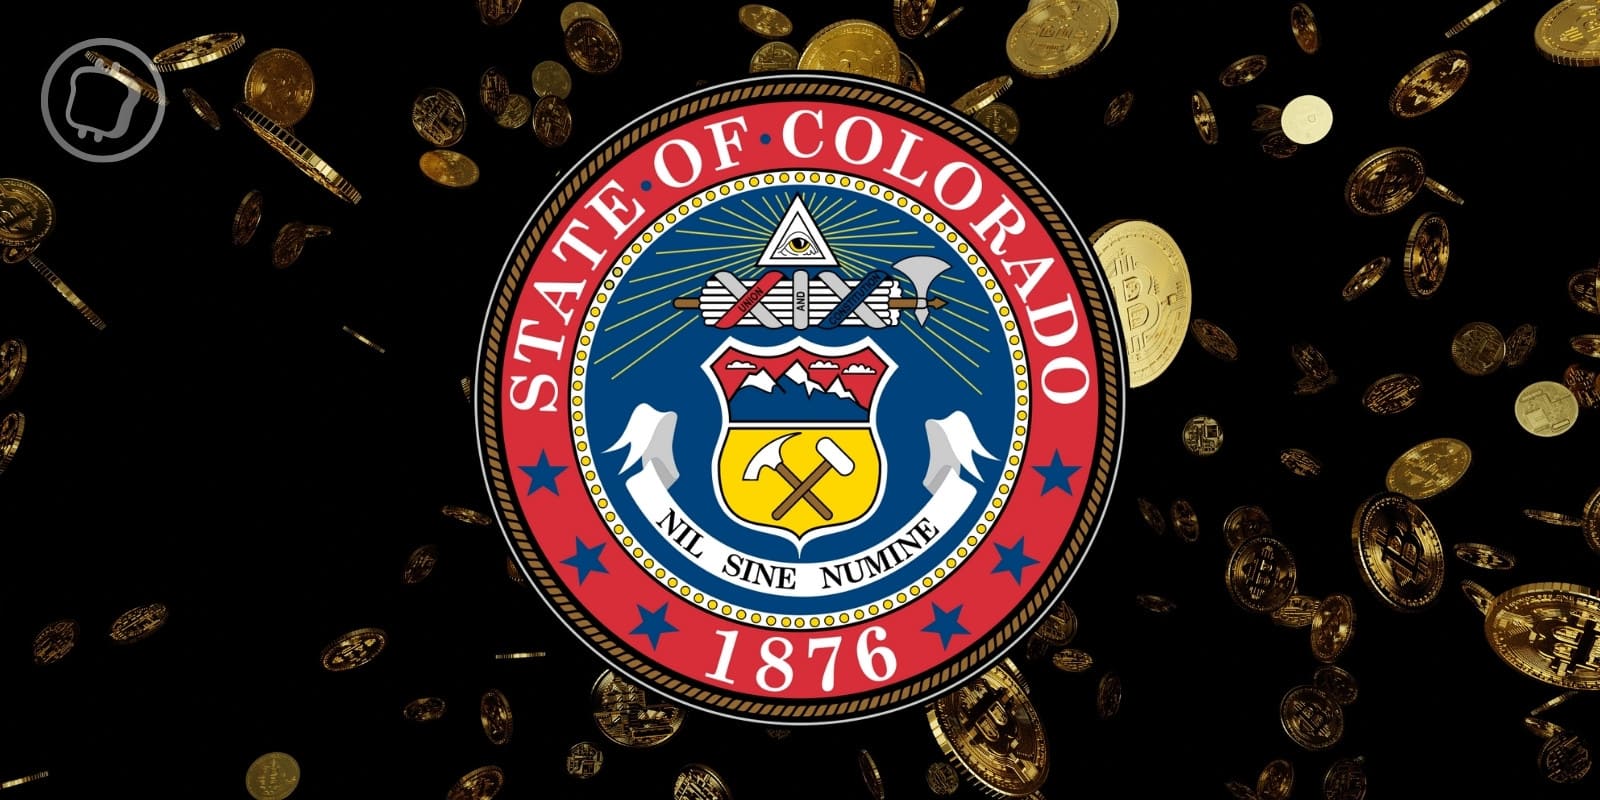 Les habitants du Colorado peuvent désormais payer leurs taxes en cryptomonnaies